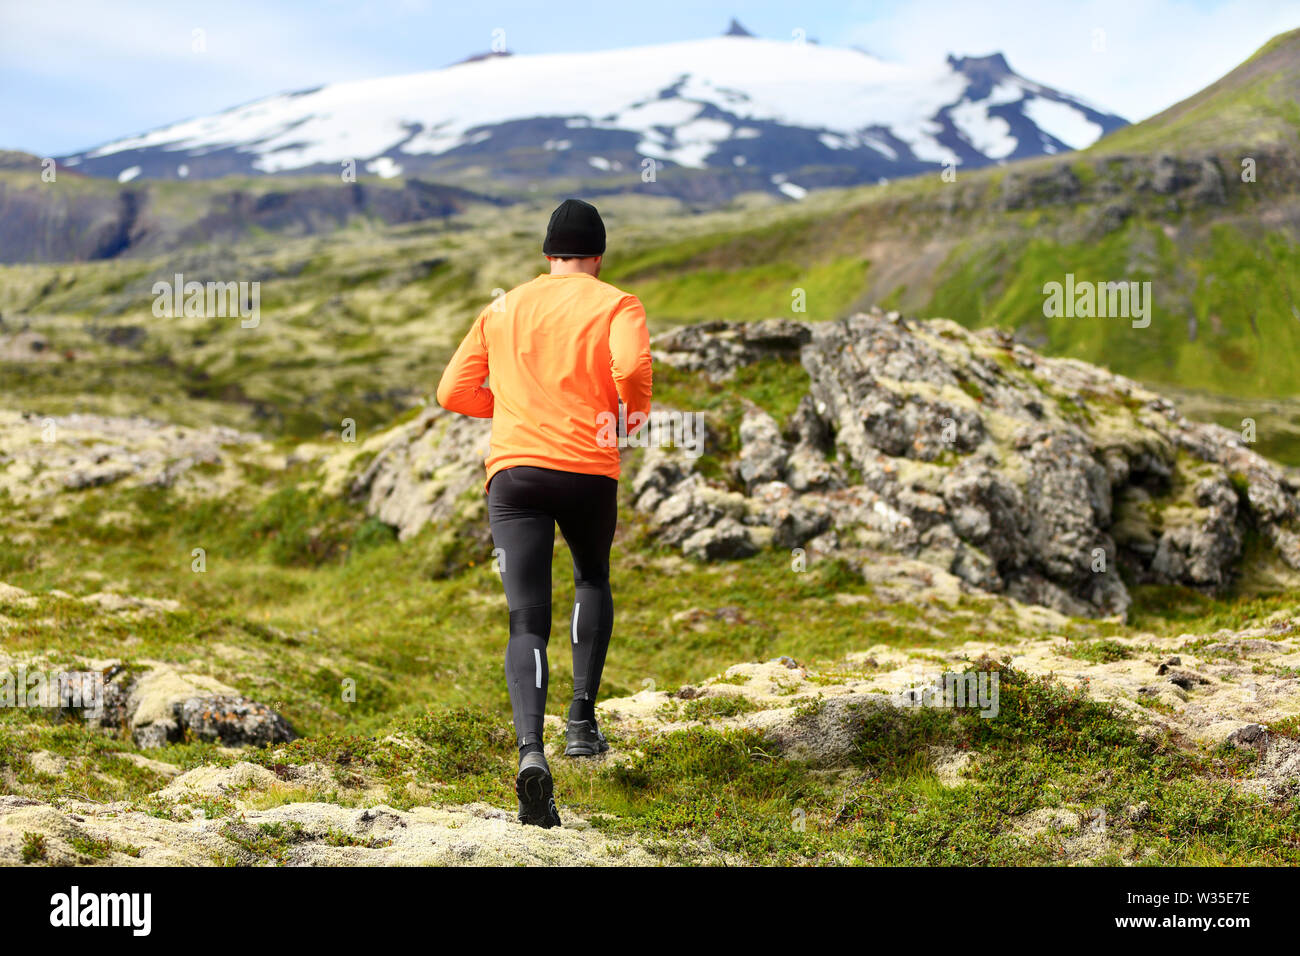 Sport Athleten Mann - trainieren Trail Runner läuft. Aktive männliche fitness Modell Ausbildung und Joggen im Freien in der schönen Berg Natur Landschaft durch Snæfellsjökull, Snaefellsnes, Island. Stockfoto